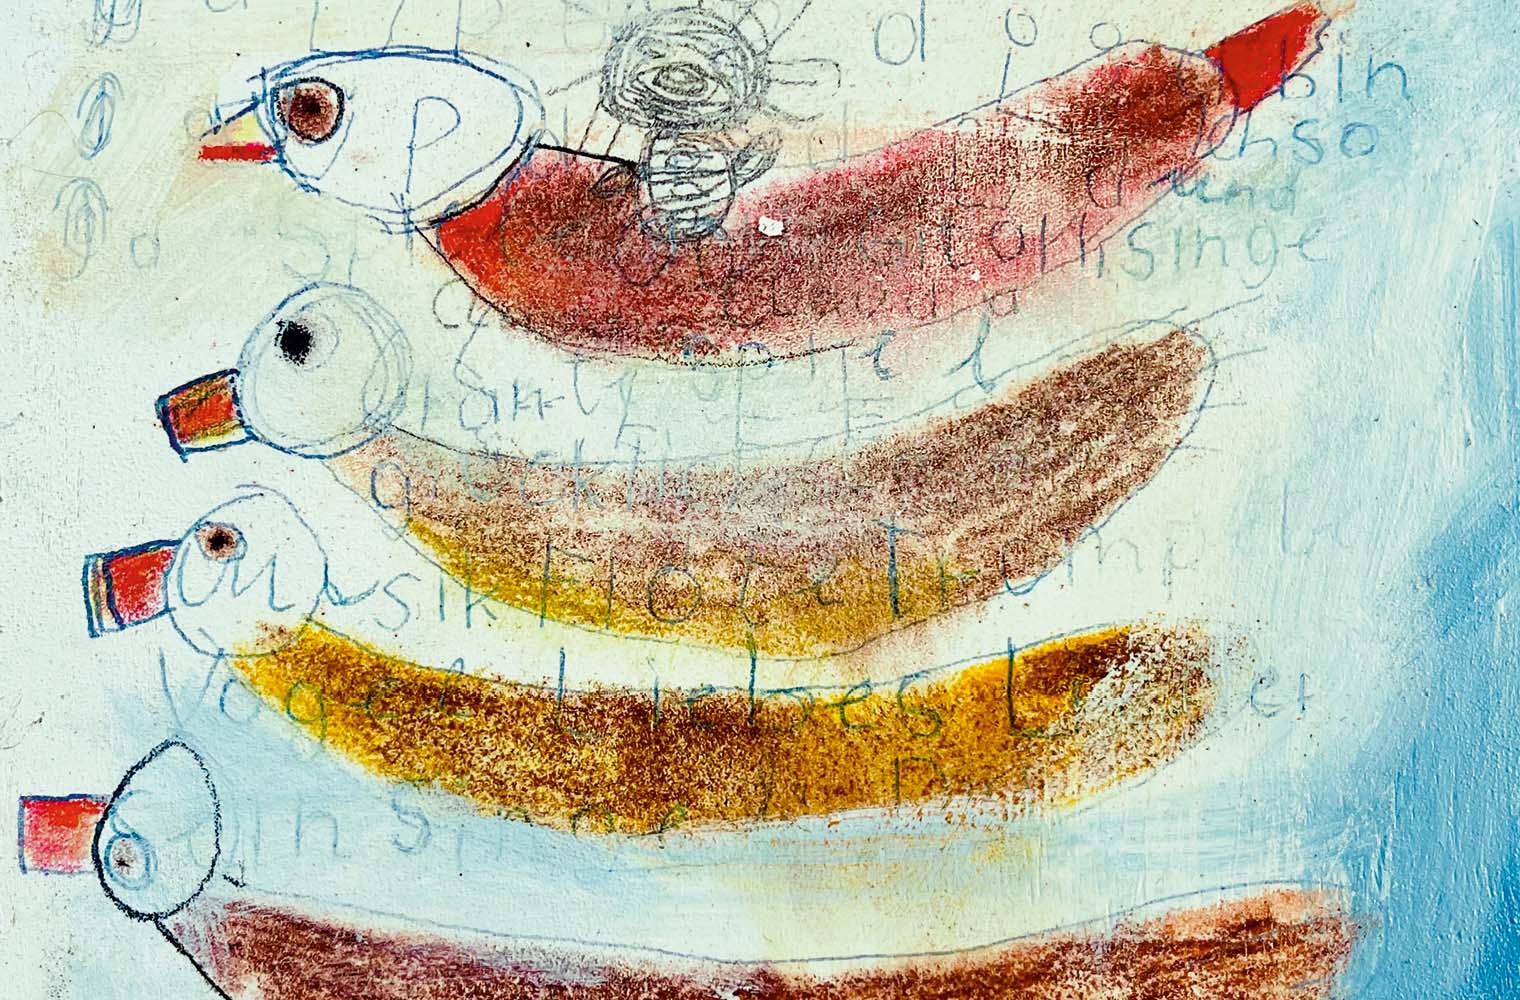 Das Gemälde zeigt vier übereinander gemalte Vögel ohne Flügel mit einem kleinen Abstand dazwischen. Die Vögel sind rot bis gelb und haben alle einen orangen Schnabel und kleine Knopfaugen. Im weißen bis hellblauen Hintergrund sind verblasste Buchstaben zu sehen.